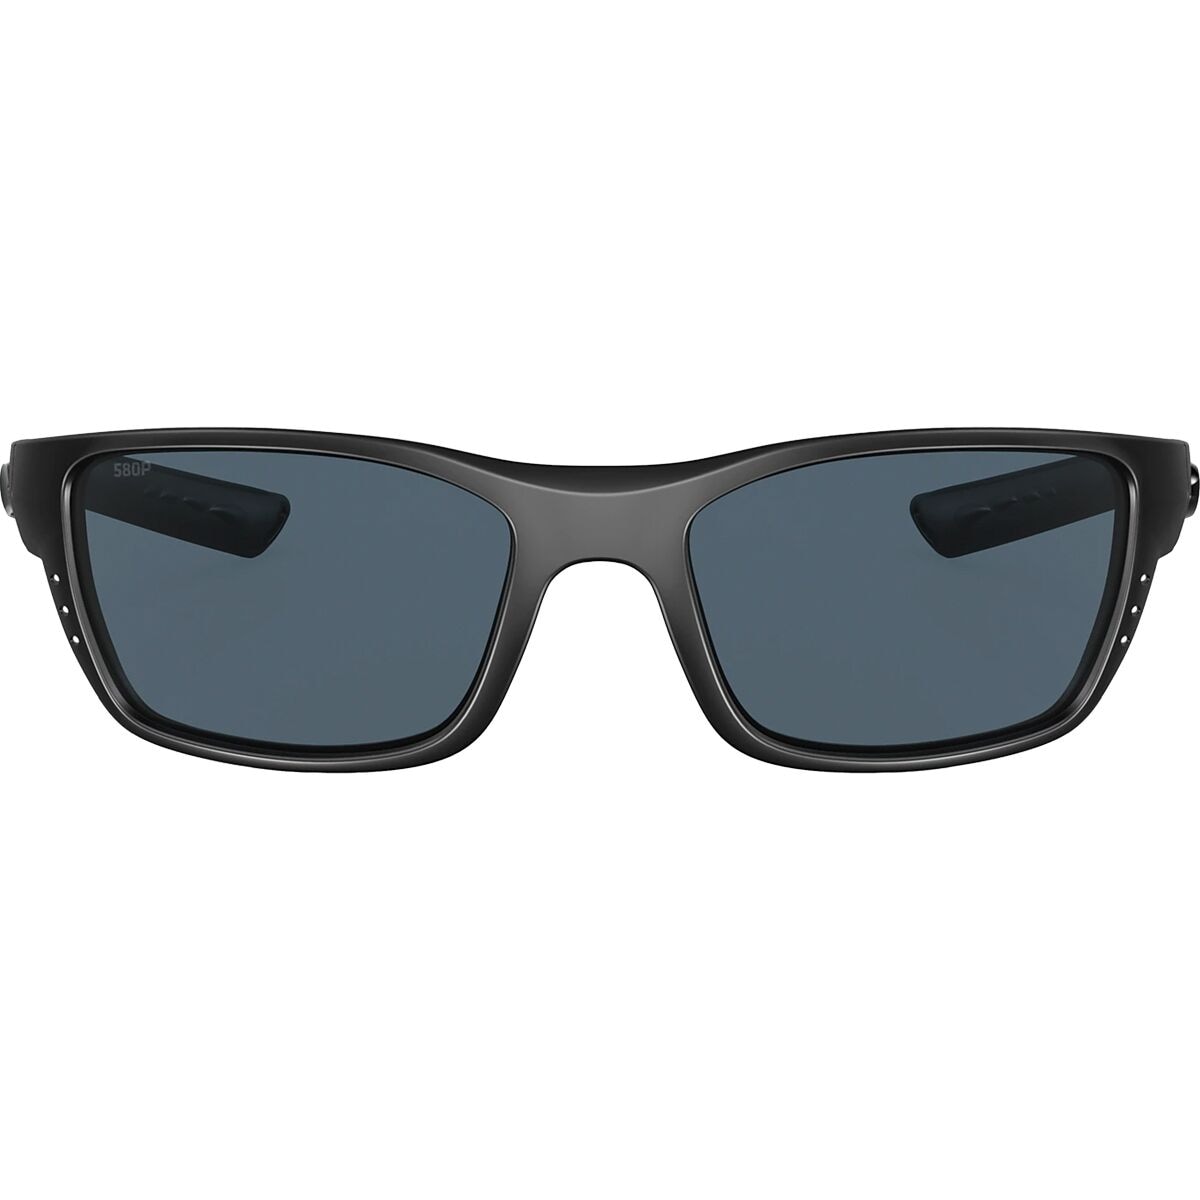 (取寄) コスタ ホワイトチップ 580P ポーラライズド サングラス Costa Whitetip 580P Polarized Sunglasses Blackout Frame Blue Mirror 580P